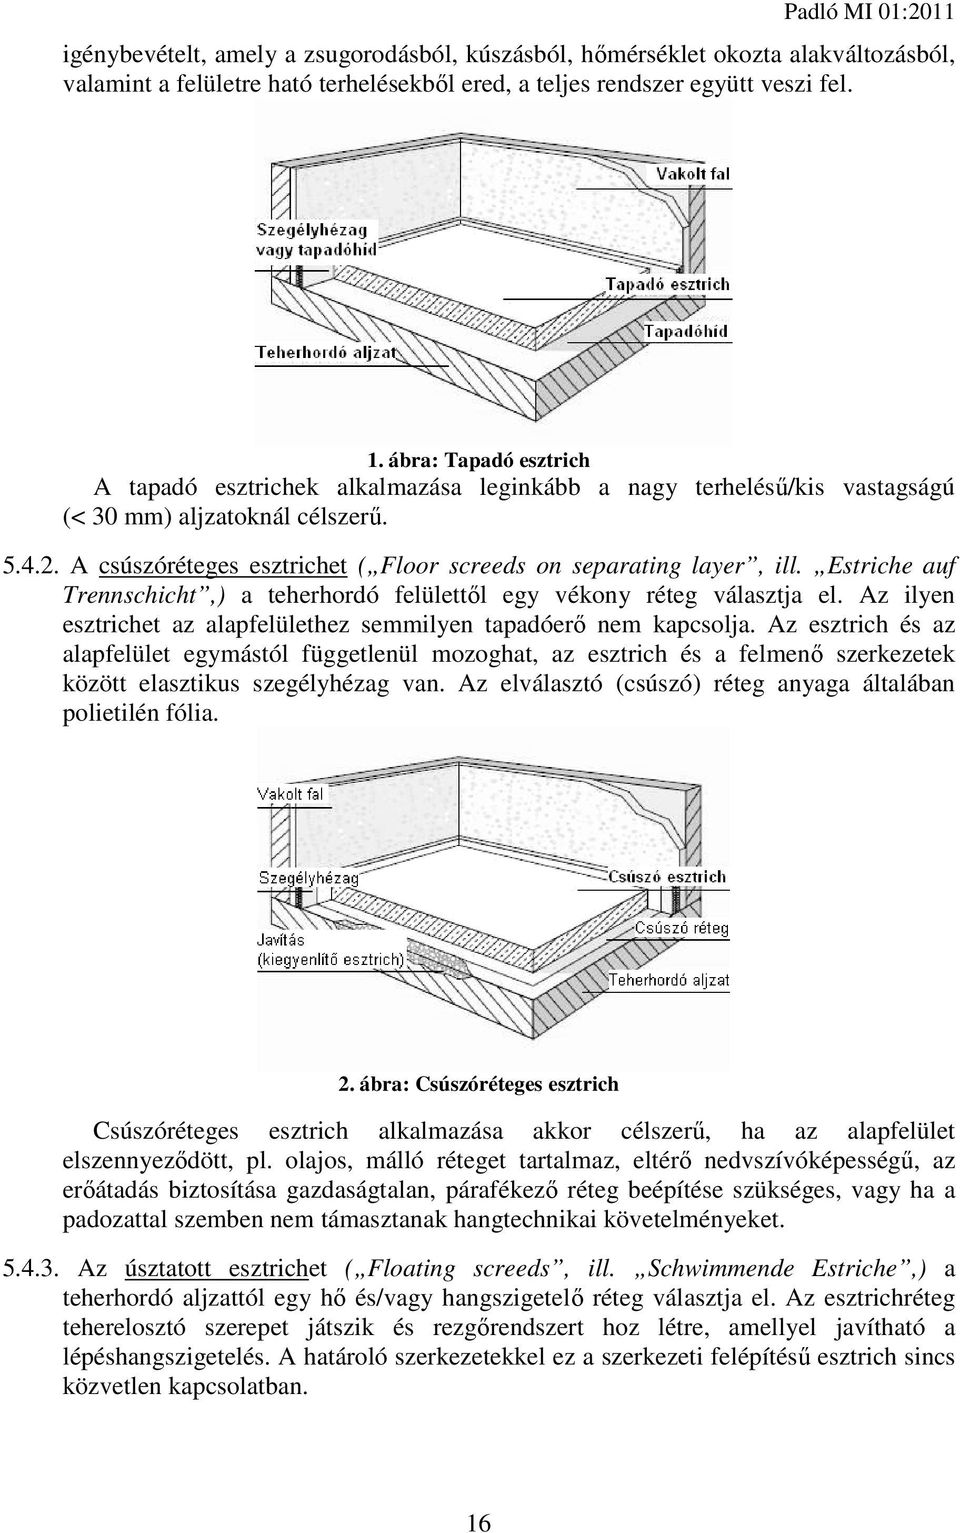 A csúszóréteges esztrichet ( Floor screeds on separating layer, ill. Estriche auf Trennschicht,) a teherhordó felülettől egy vékony réteg választja el.